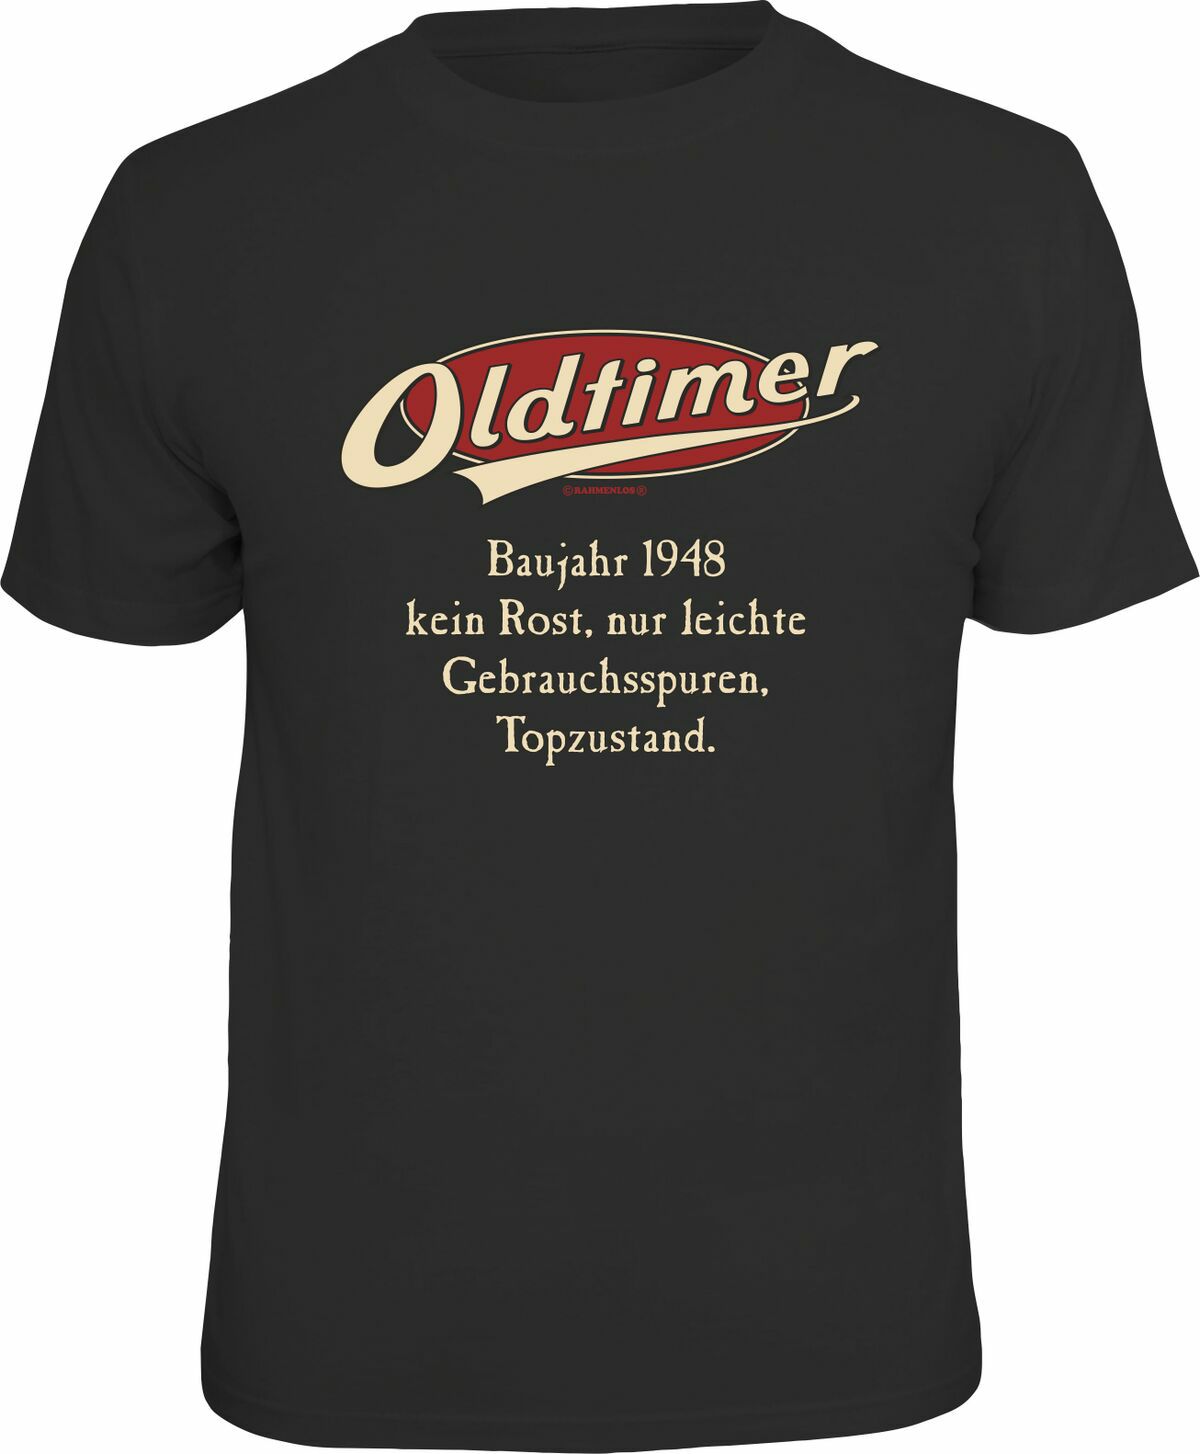 T-Shirt Oldtimer 1948 L